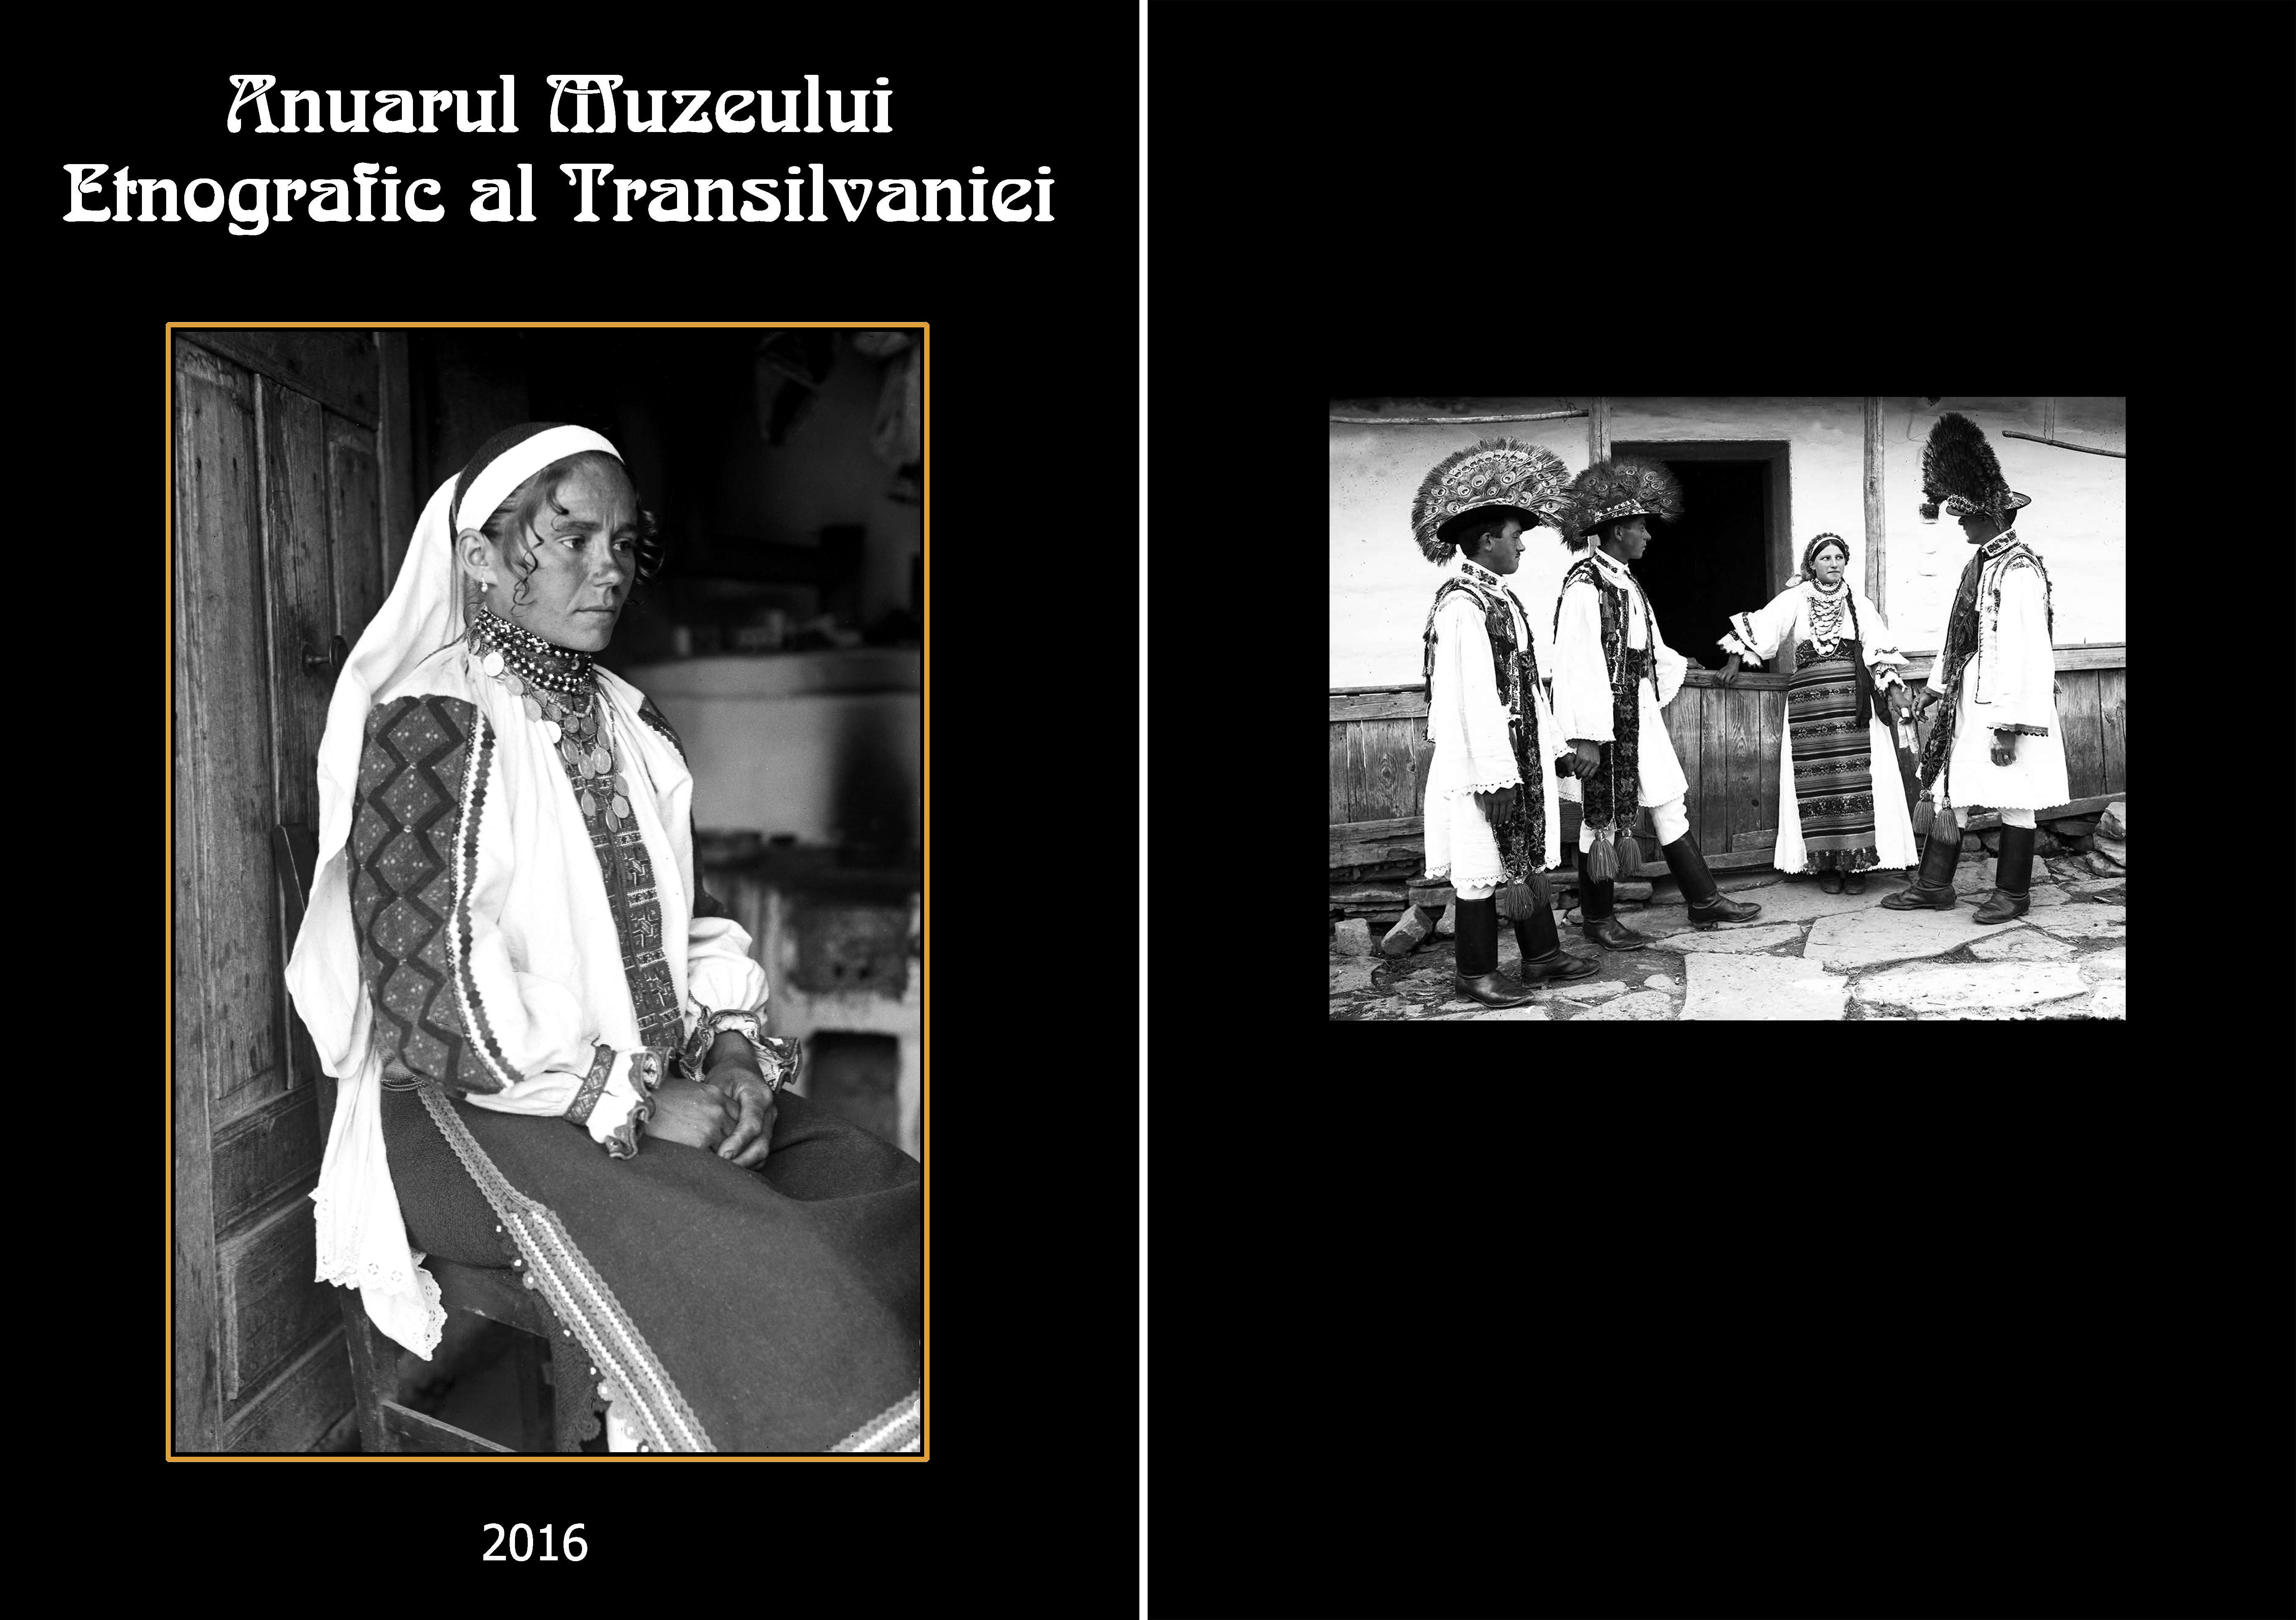 Cultura tradiţională imaterială românească din Bistriţa-Năsăud, vo. II, Sărbătorile ciclului social şi calendaristic sau Munci şi zile în Ţinutul Bistriţei şi Năsăudului